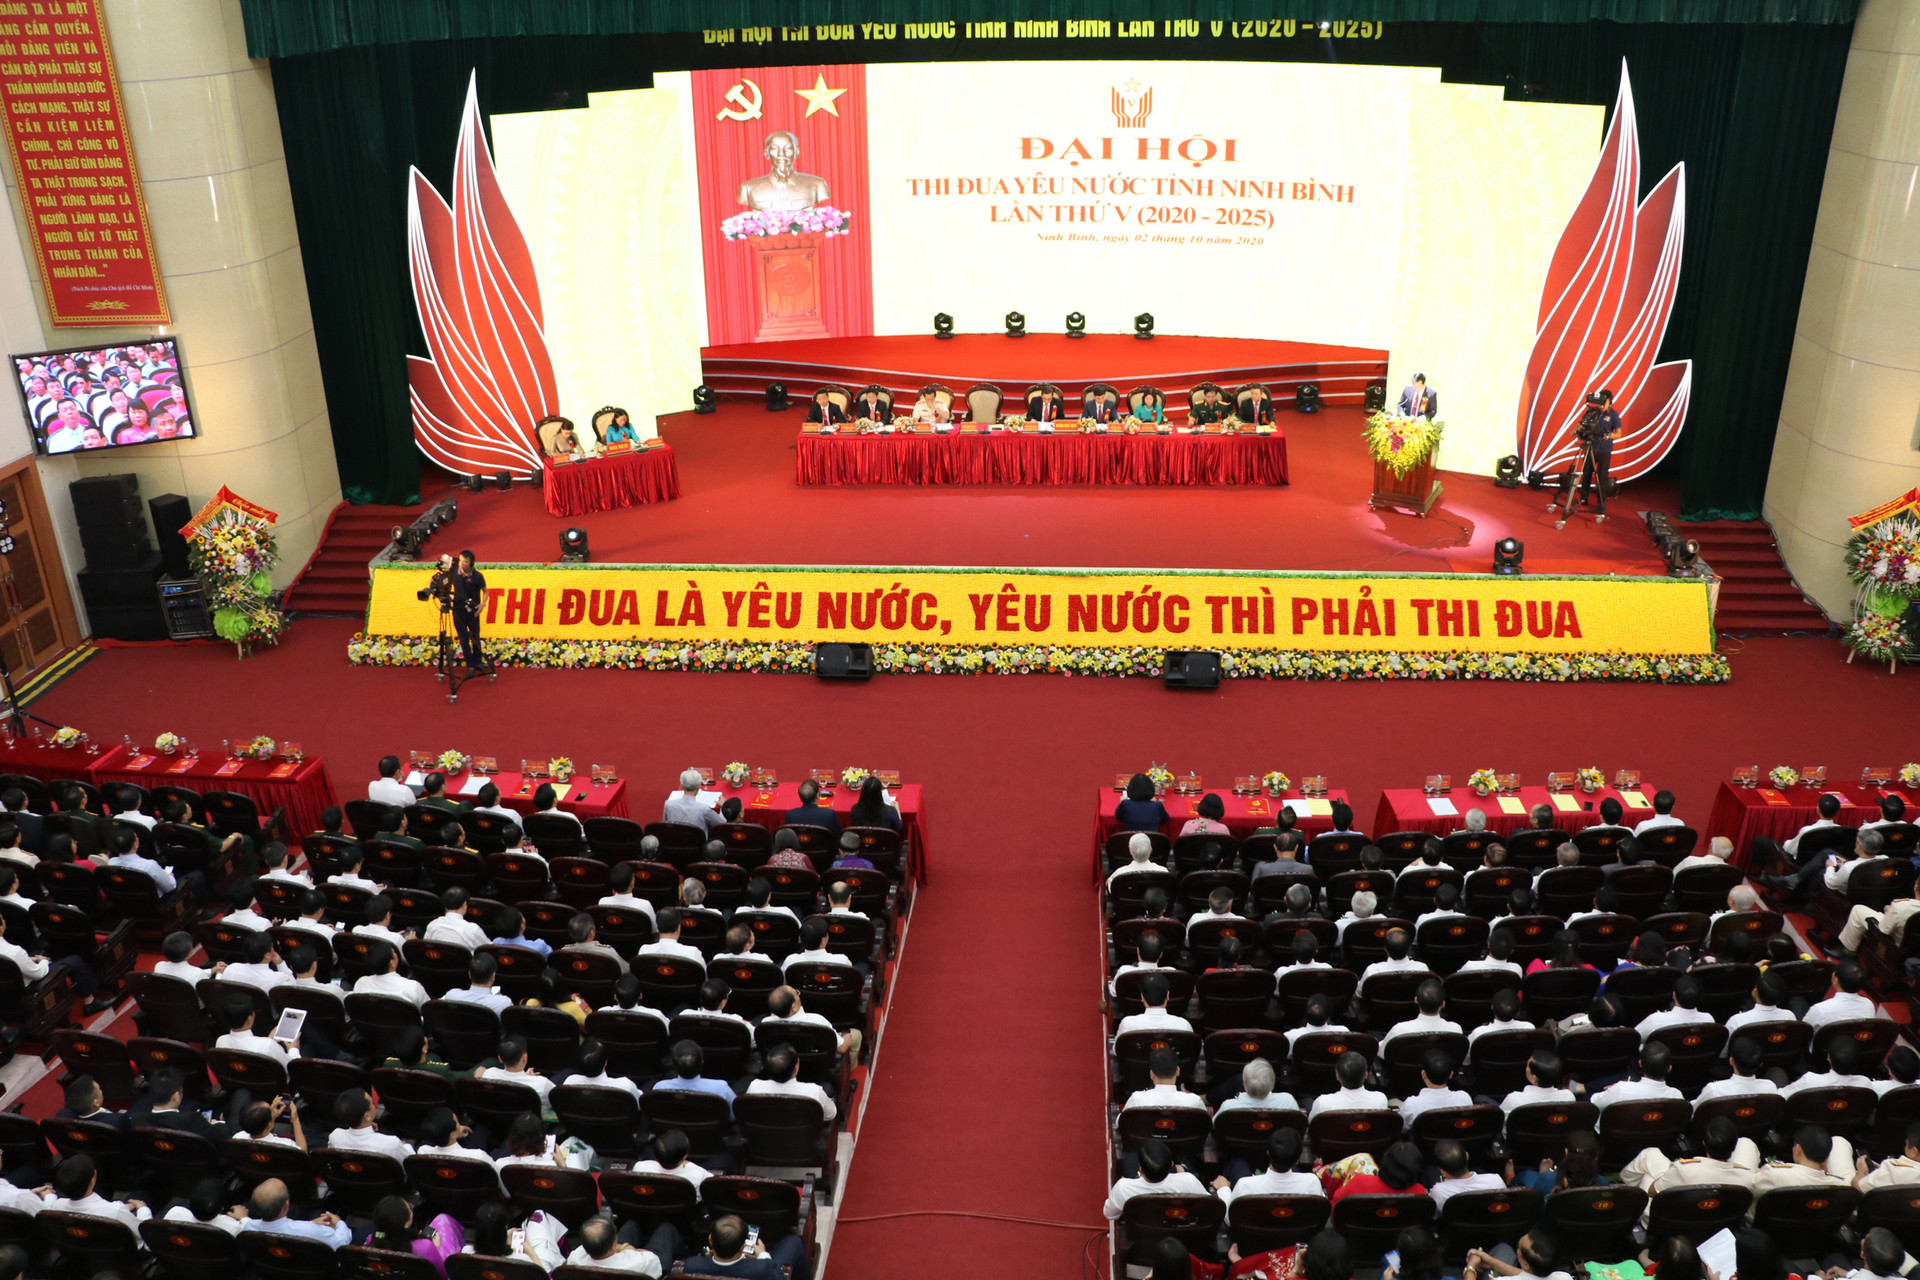 Toàn cảnh Đại hội thi đua yêu nước tỉnh Ninh Bình lần thứ V